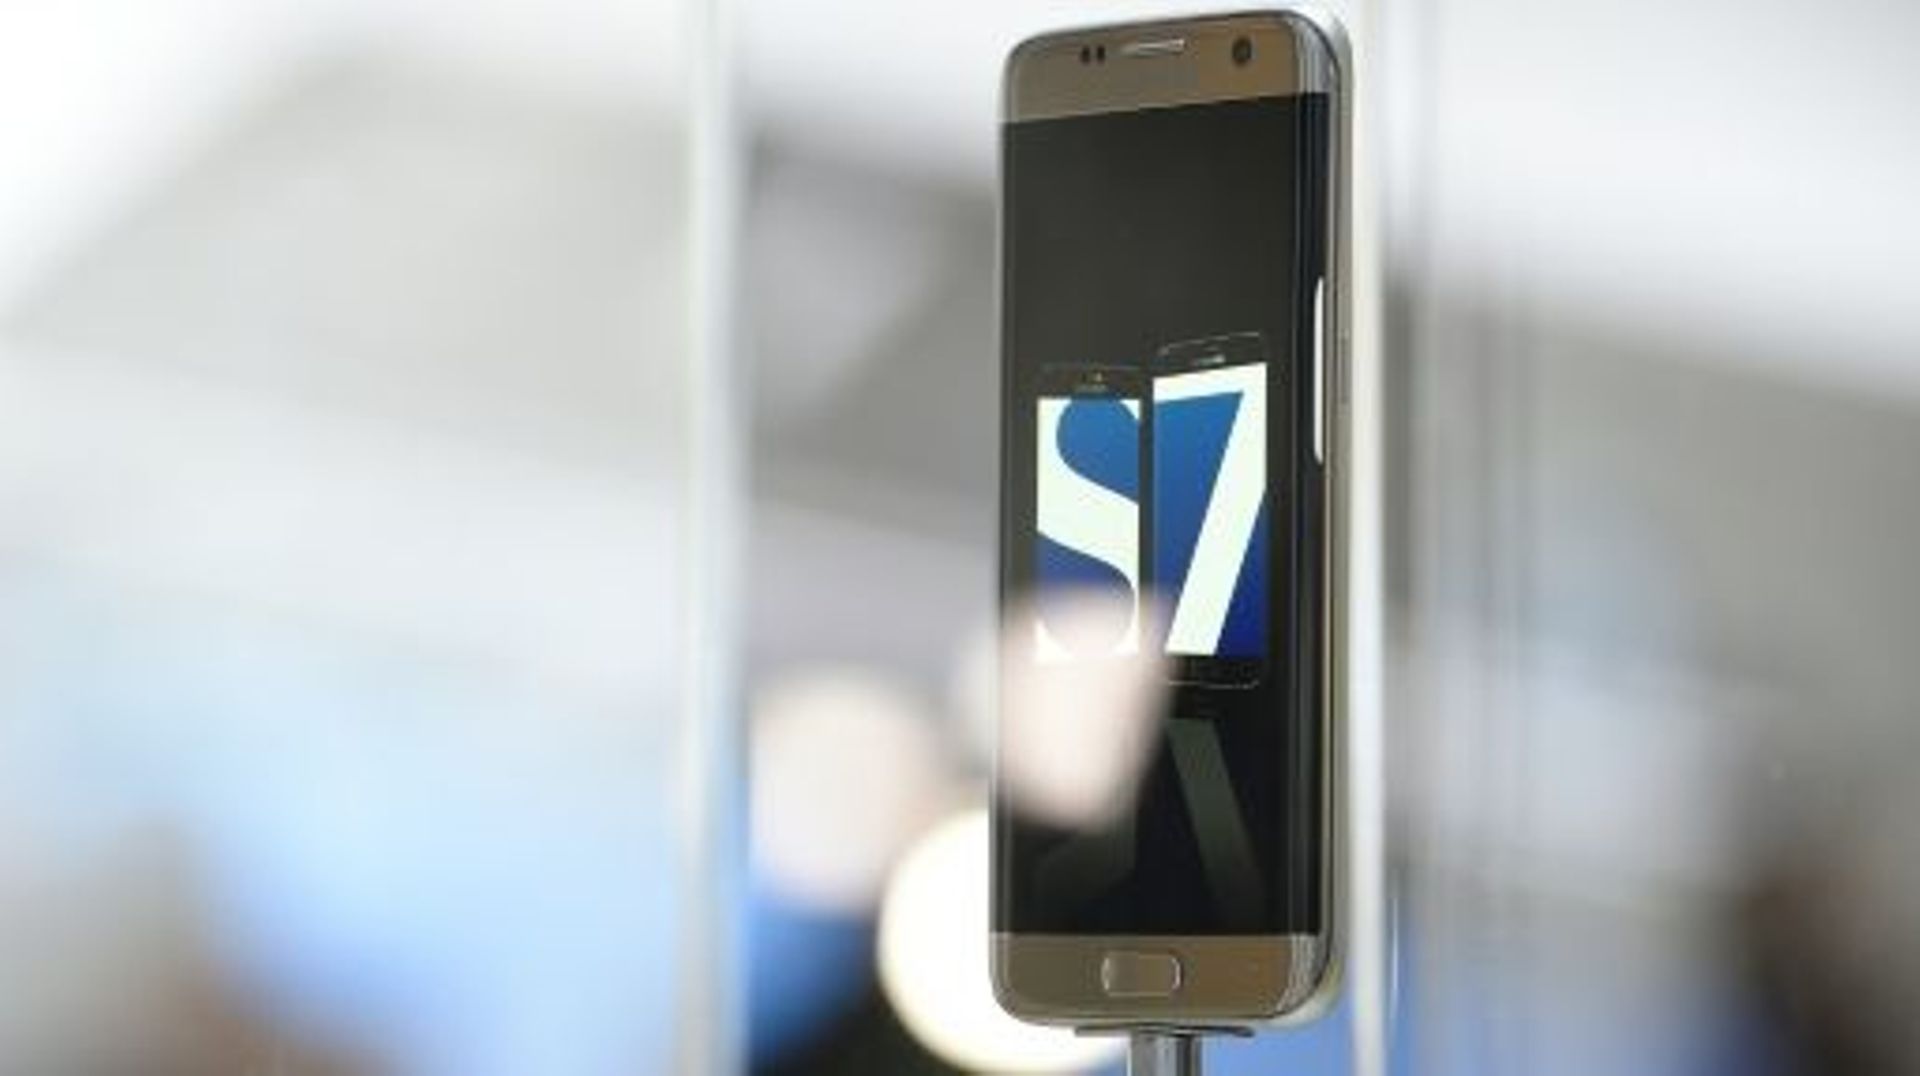 Le nouveau Galaxy 7 de Samsung présenté à Barcelone, le 21 février 2016